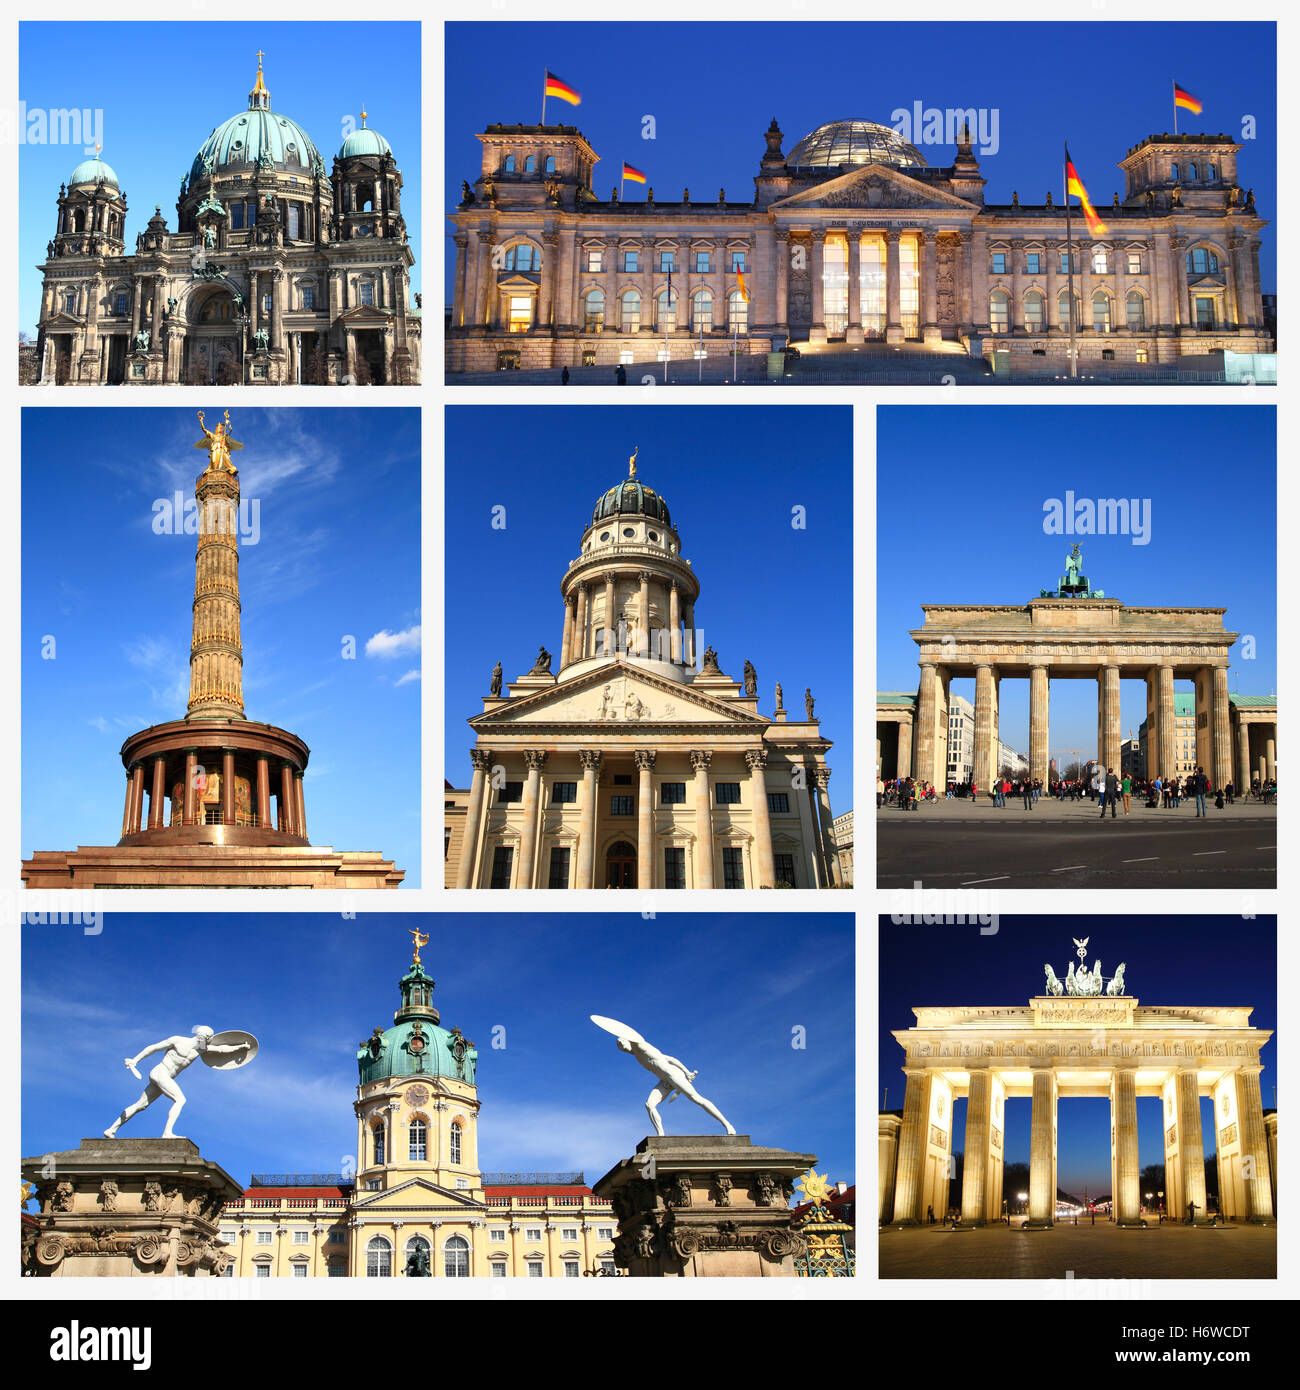 Ilustración collage postal recuerdos de viaje impresiones colección Scrapbook Arte monumento de la ciudad de viajes diseño modelo Foto de stock